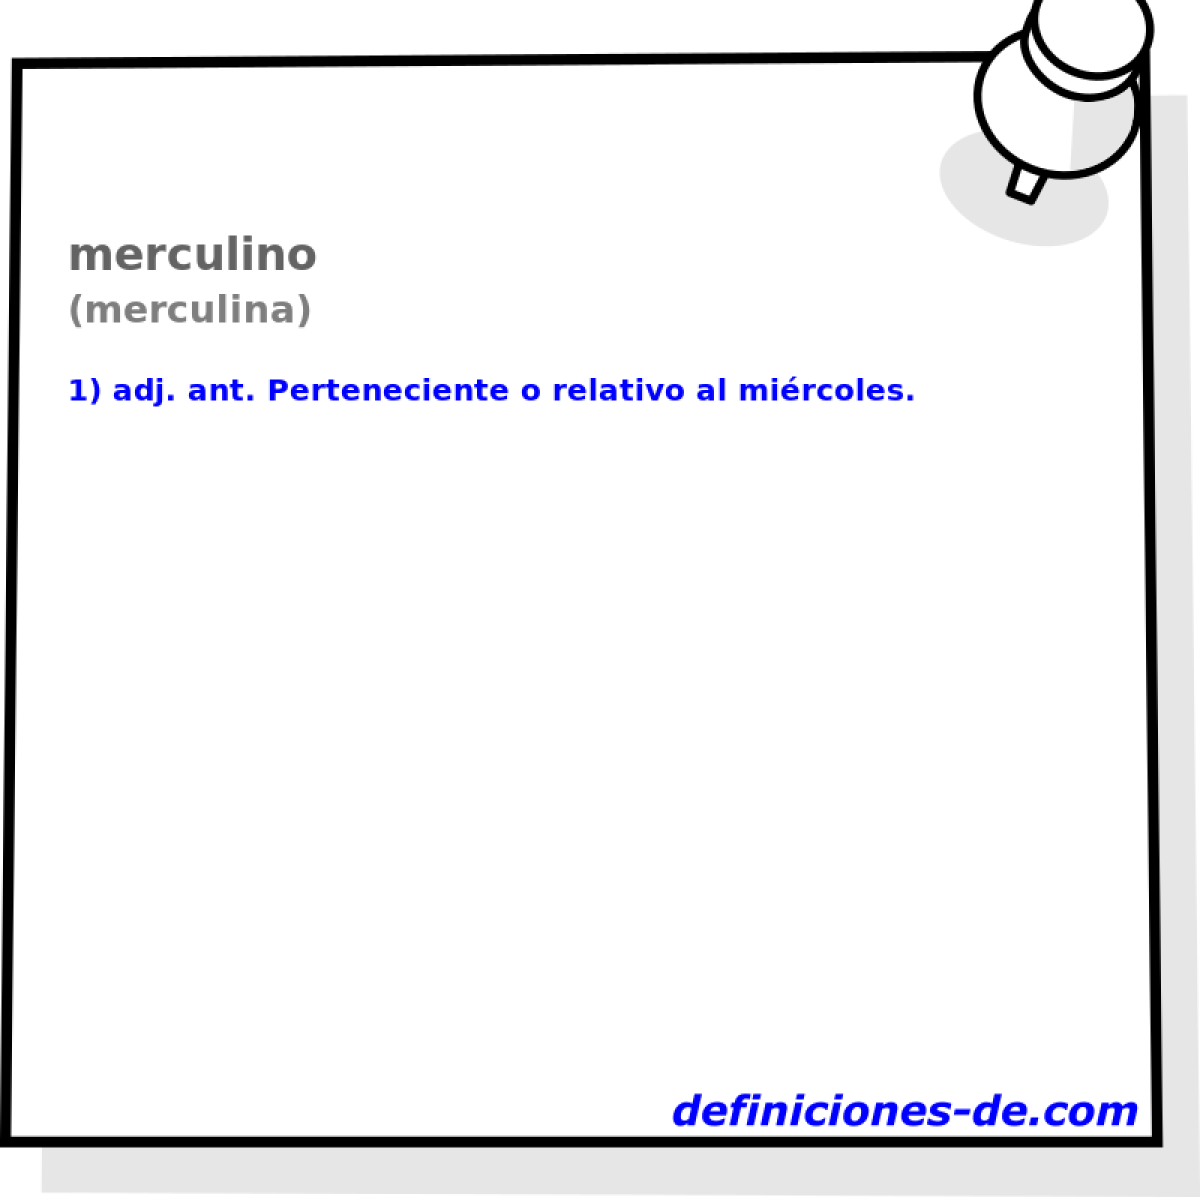 merculino (merculina)